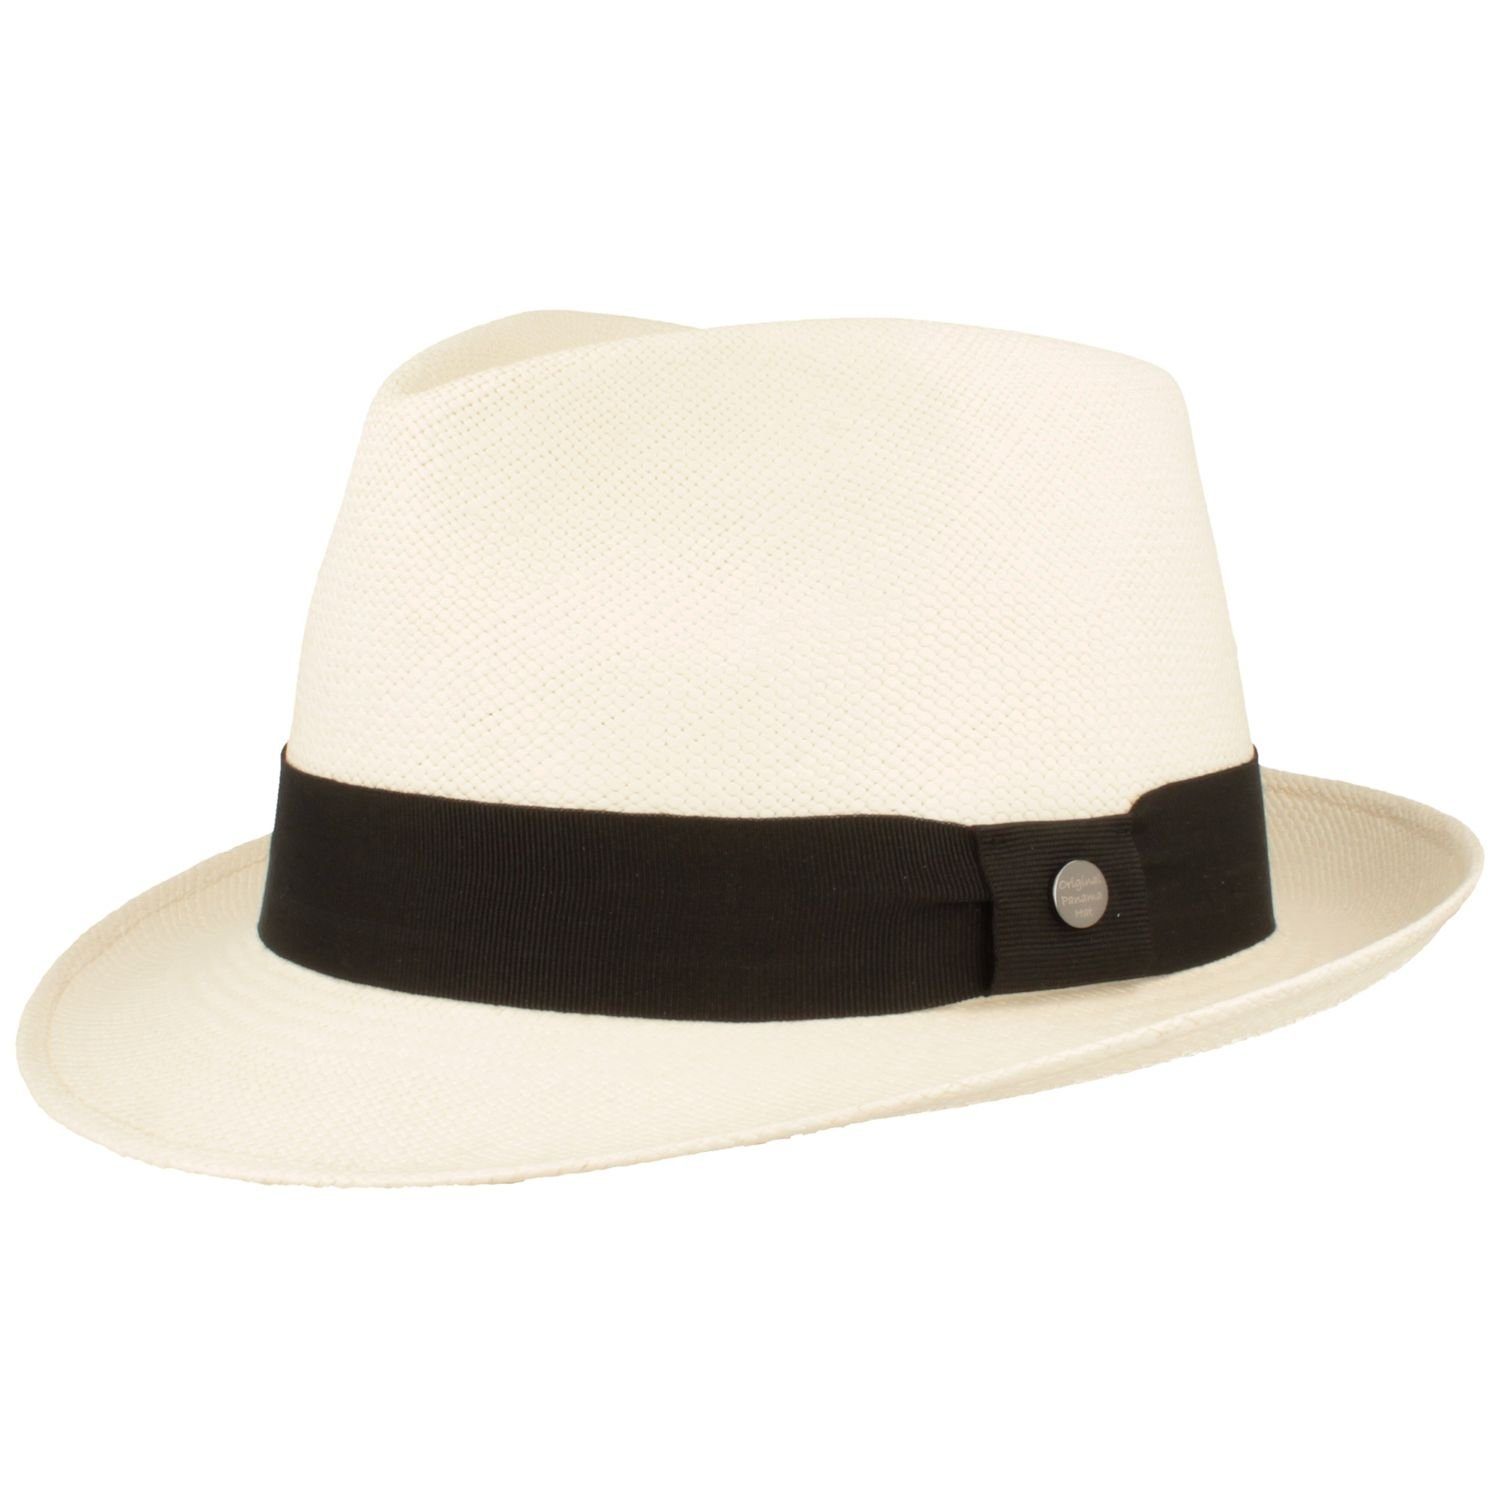 Breiter Strohhut Trilby Panama Hut mit weiss UV-Schutz Garnitur 50+ moderner